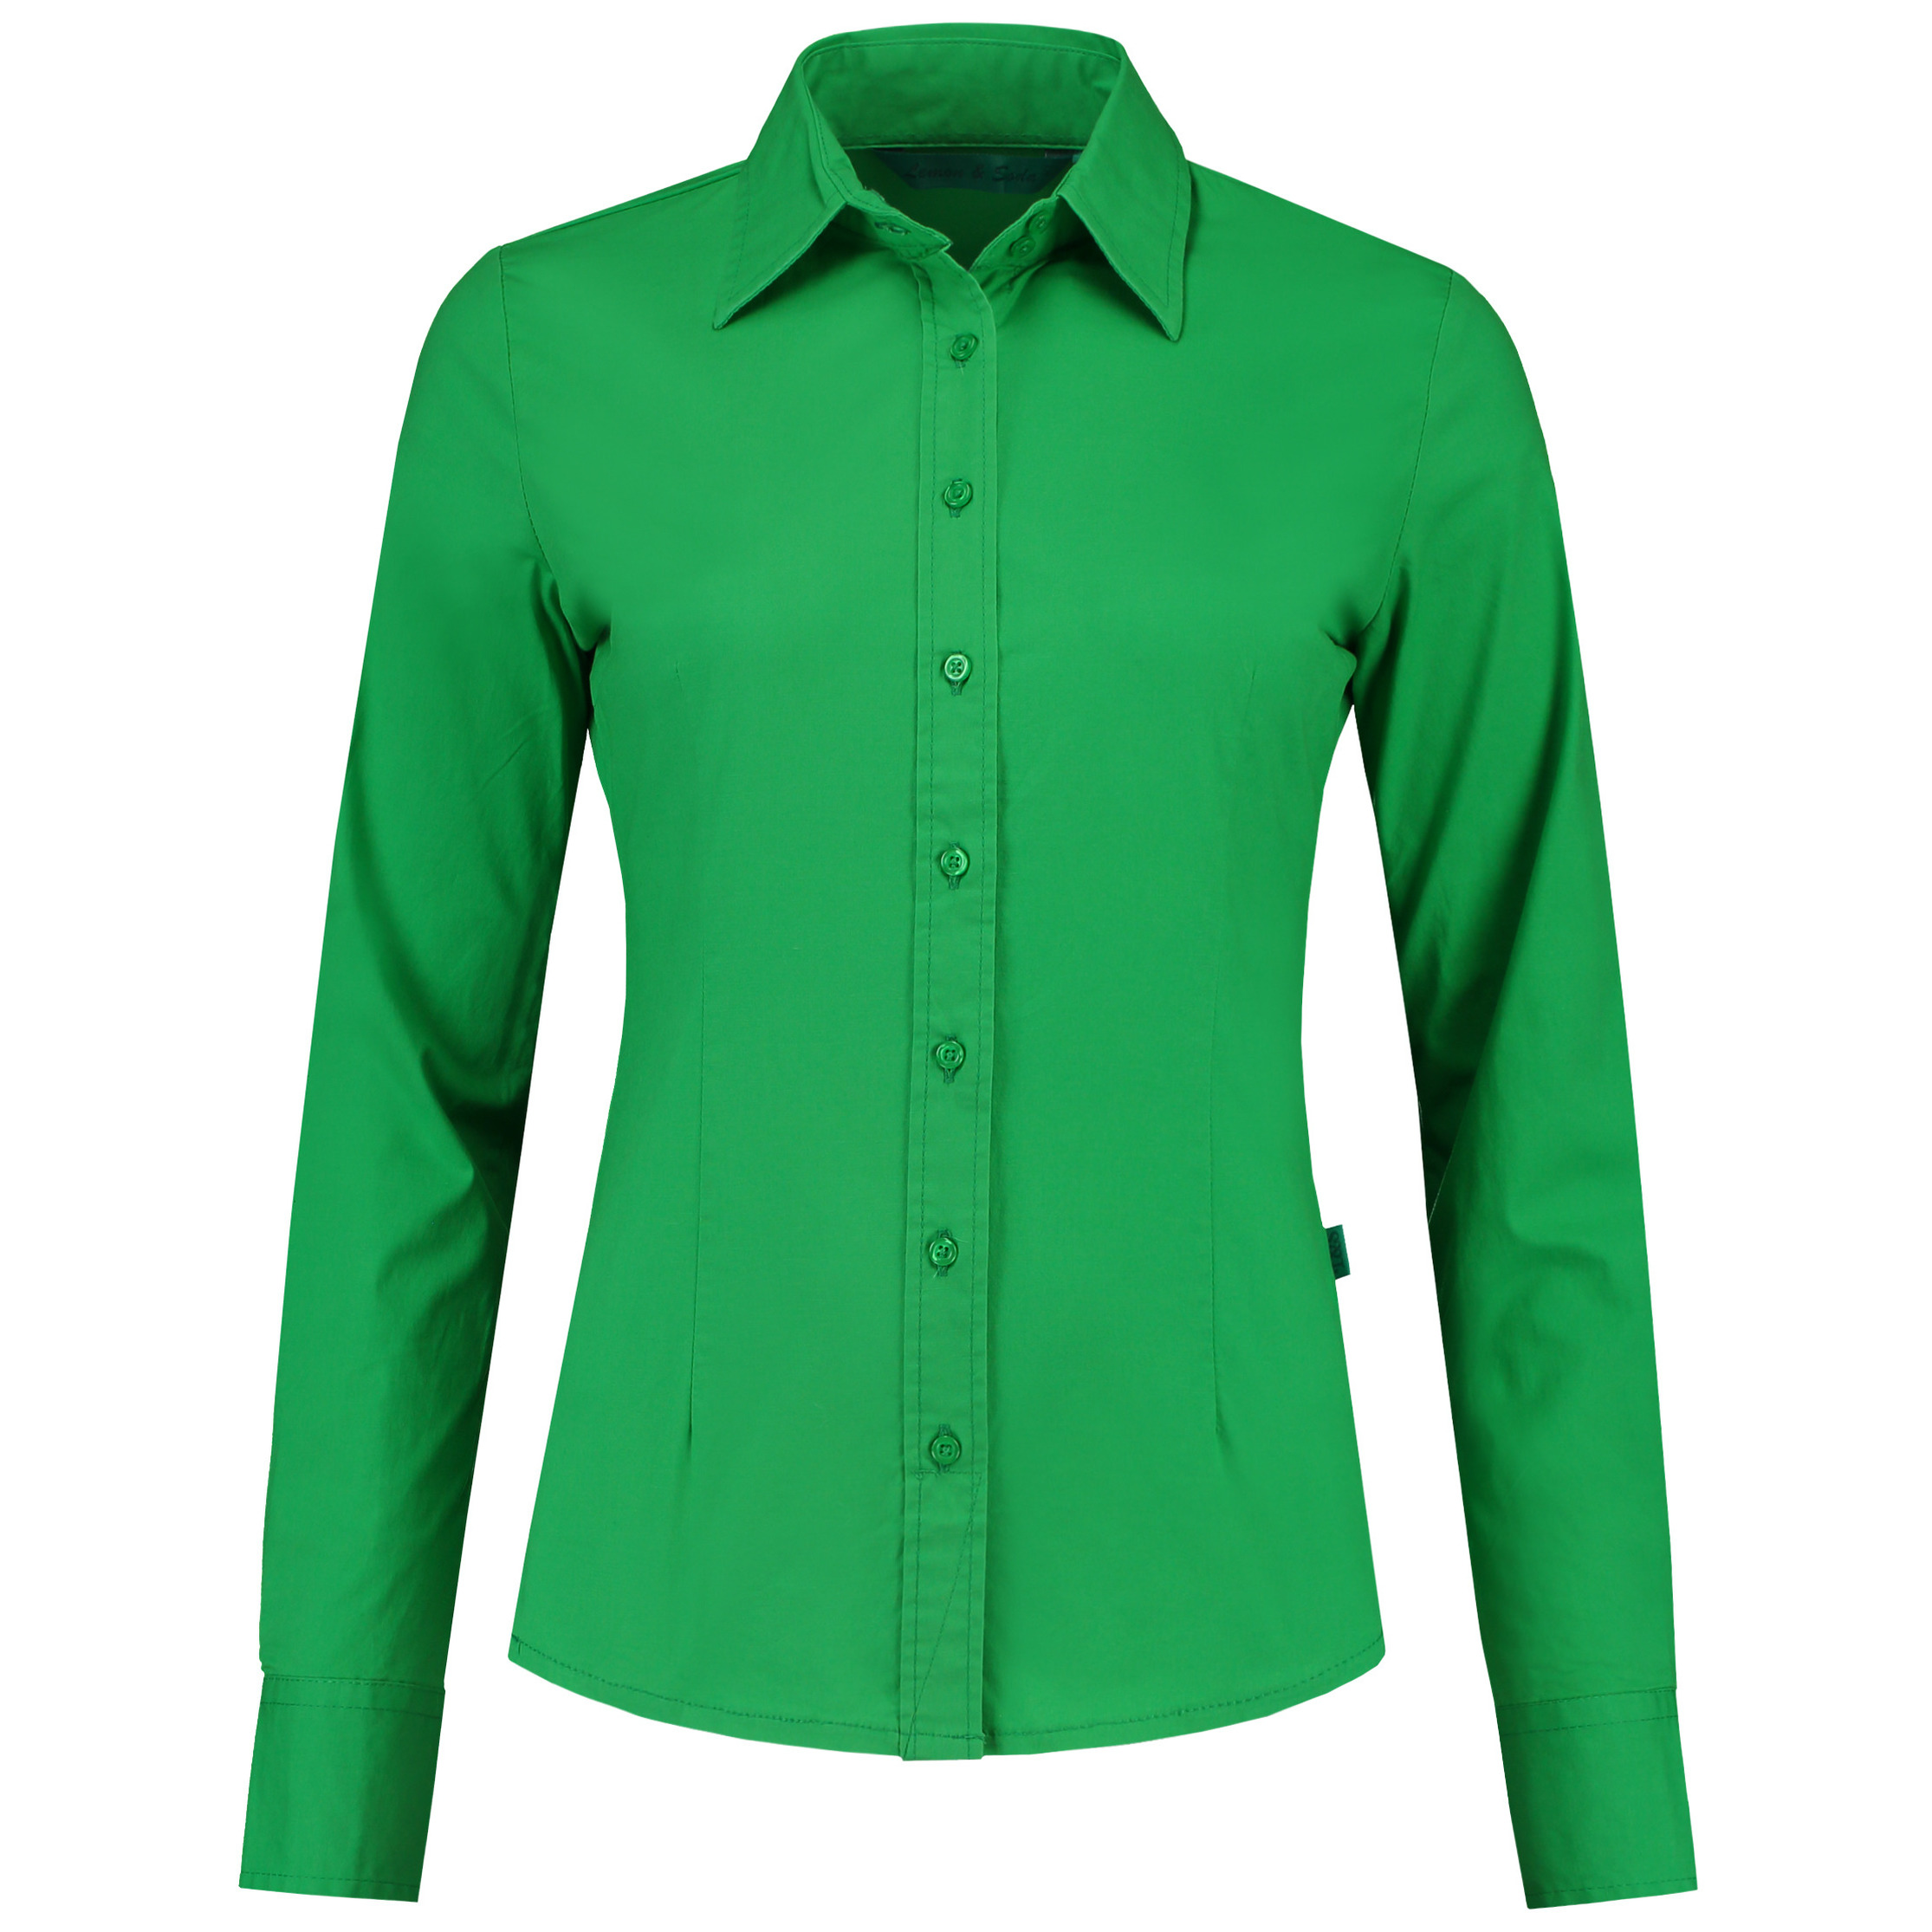 Senator negatief Split Groene katoenen blouse voor dames met lange mouwen in de Carnavalskostuum  winkel.